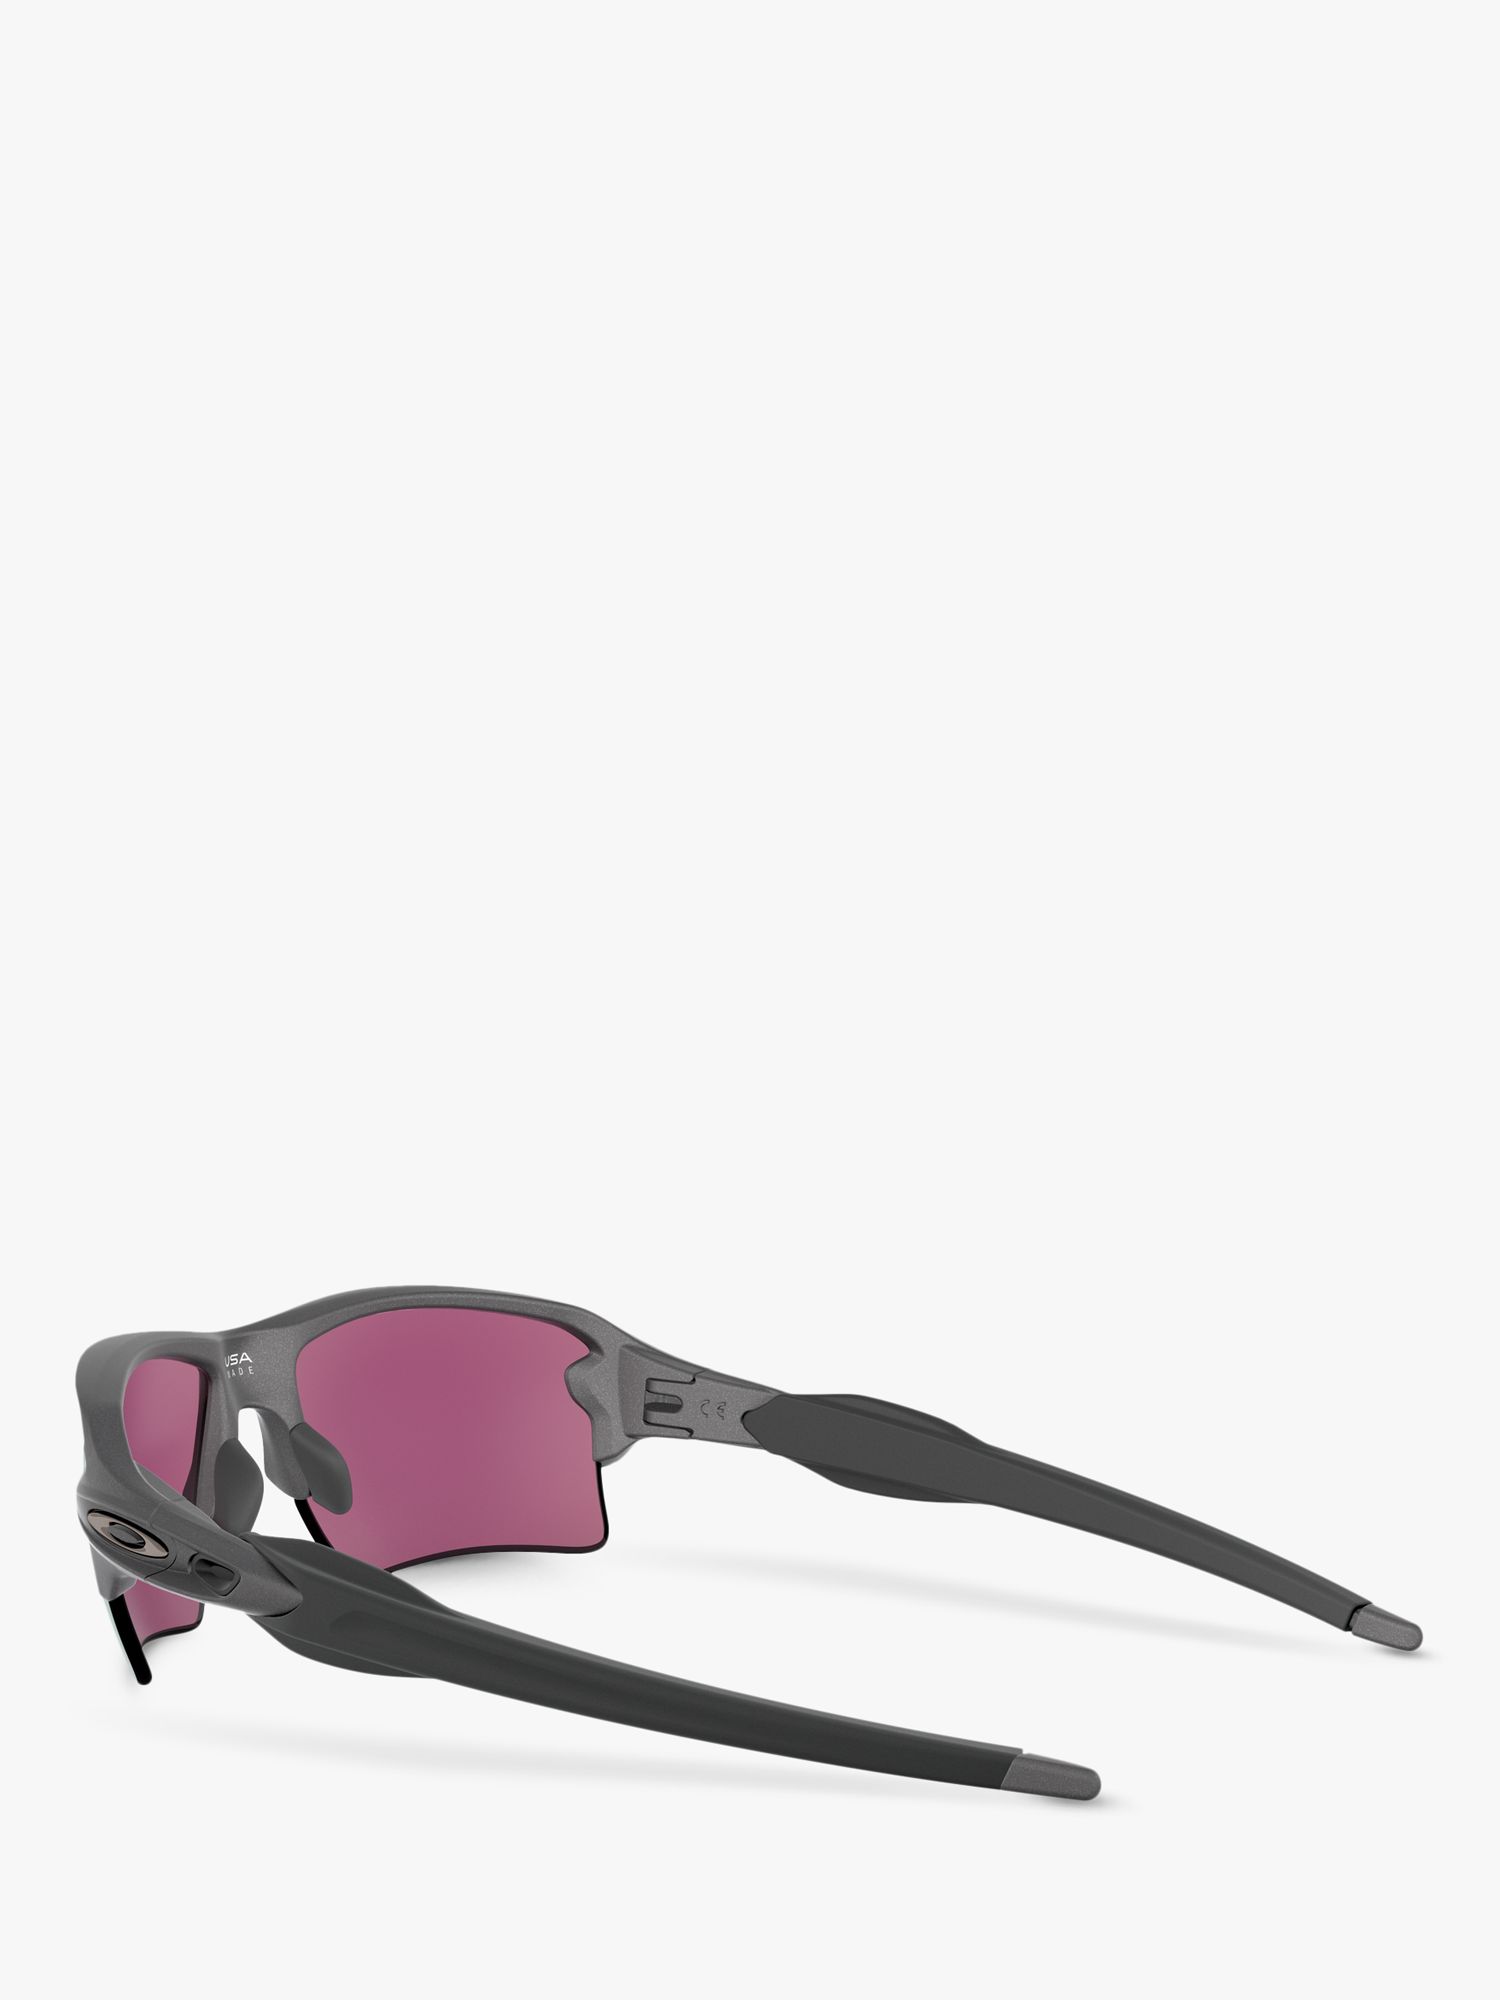 [OO9188-A6] Mens Oakley FLAK 2.0 XL St Louis Cardinals Sunglasses